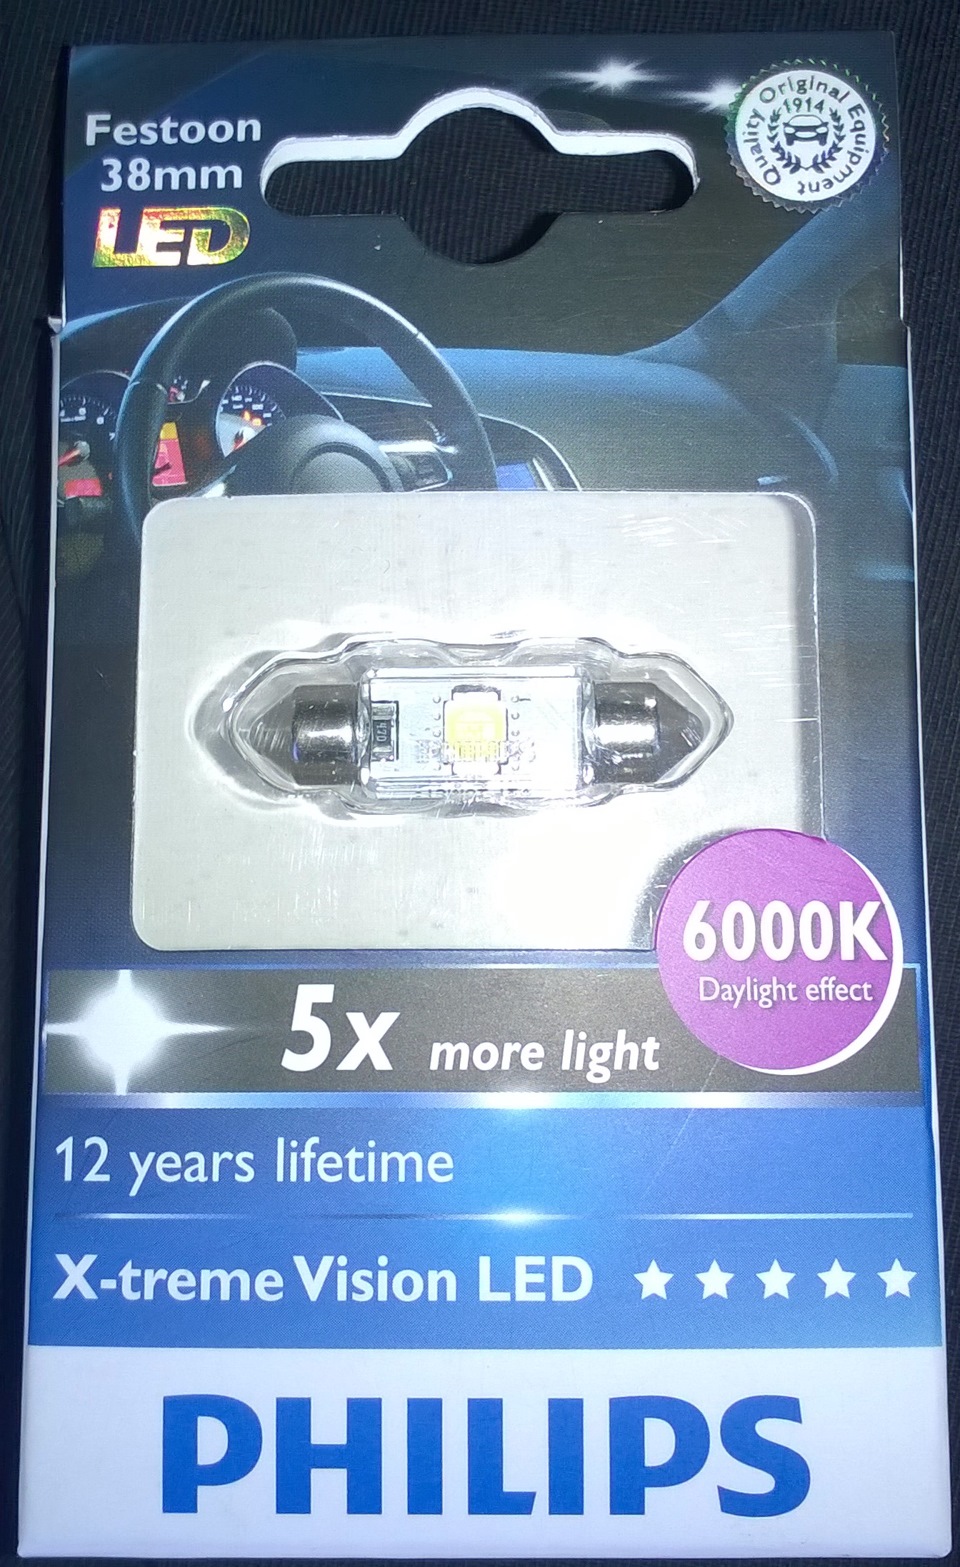 Ampoule LED PHILIPS X-Trême Vision Festoon C5W 1W 38mm 6000K